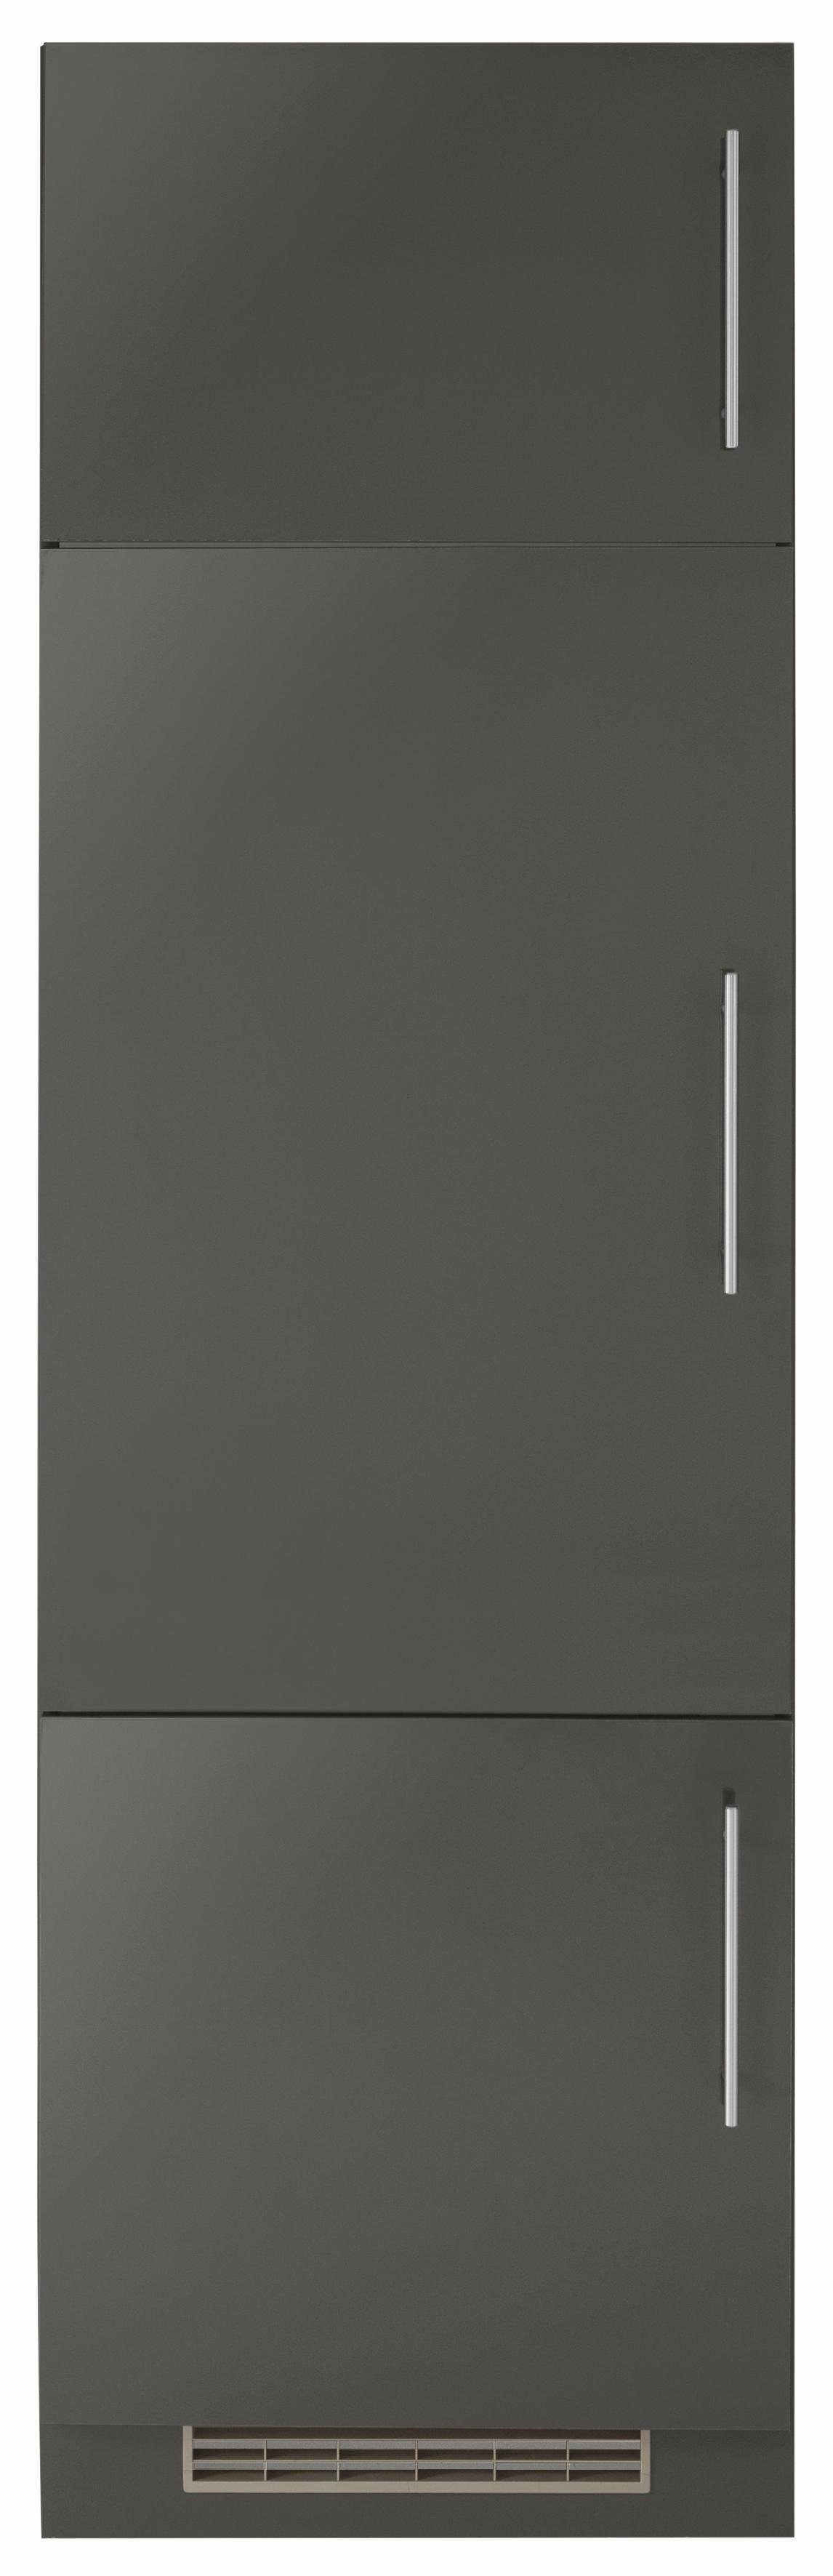 wiho Küchen Kühlumbauschrank Cali 60 cm breit, ohne E-Gerät Front: Anthrazit Glanz, Korpus: Anthrazit matt | Anthrazit